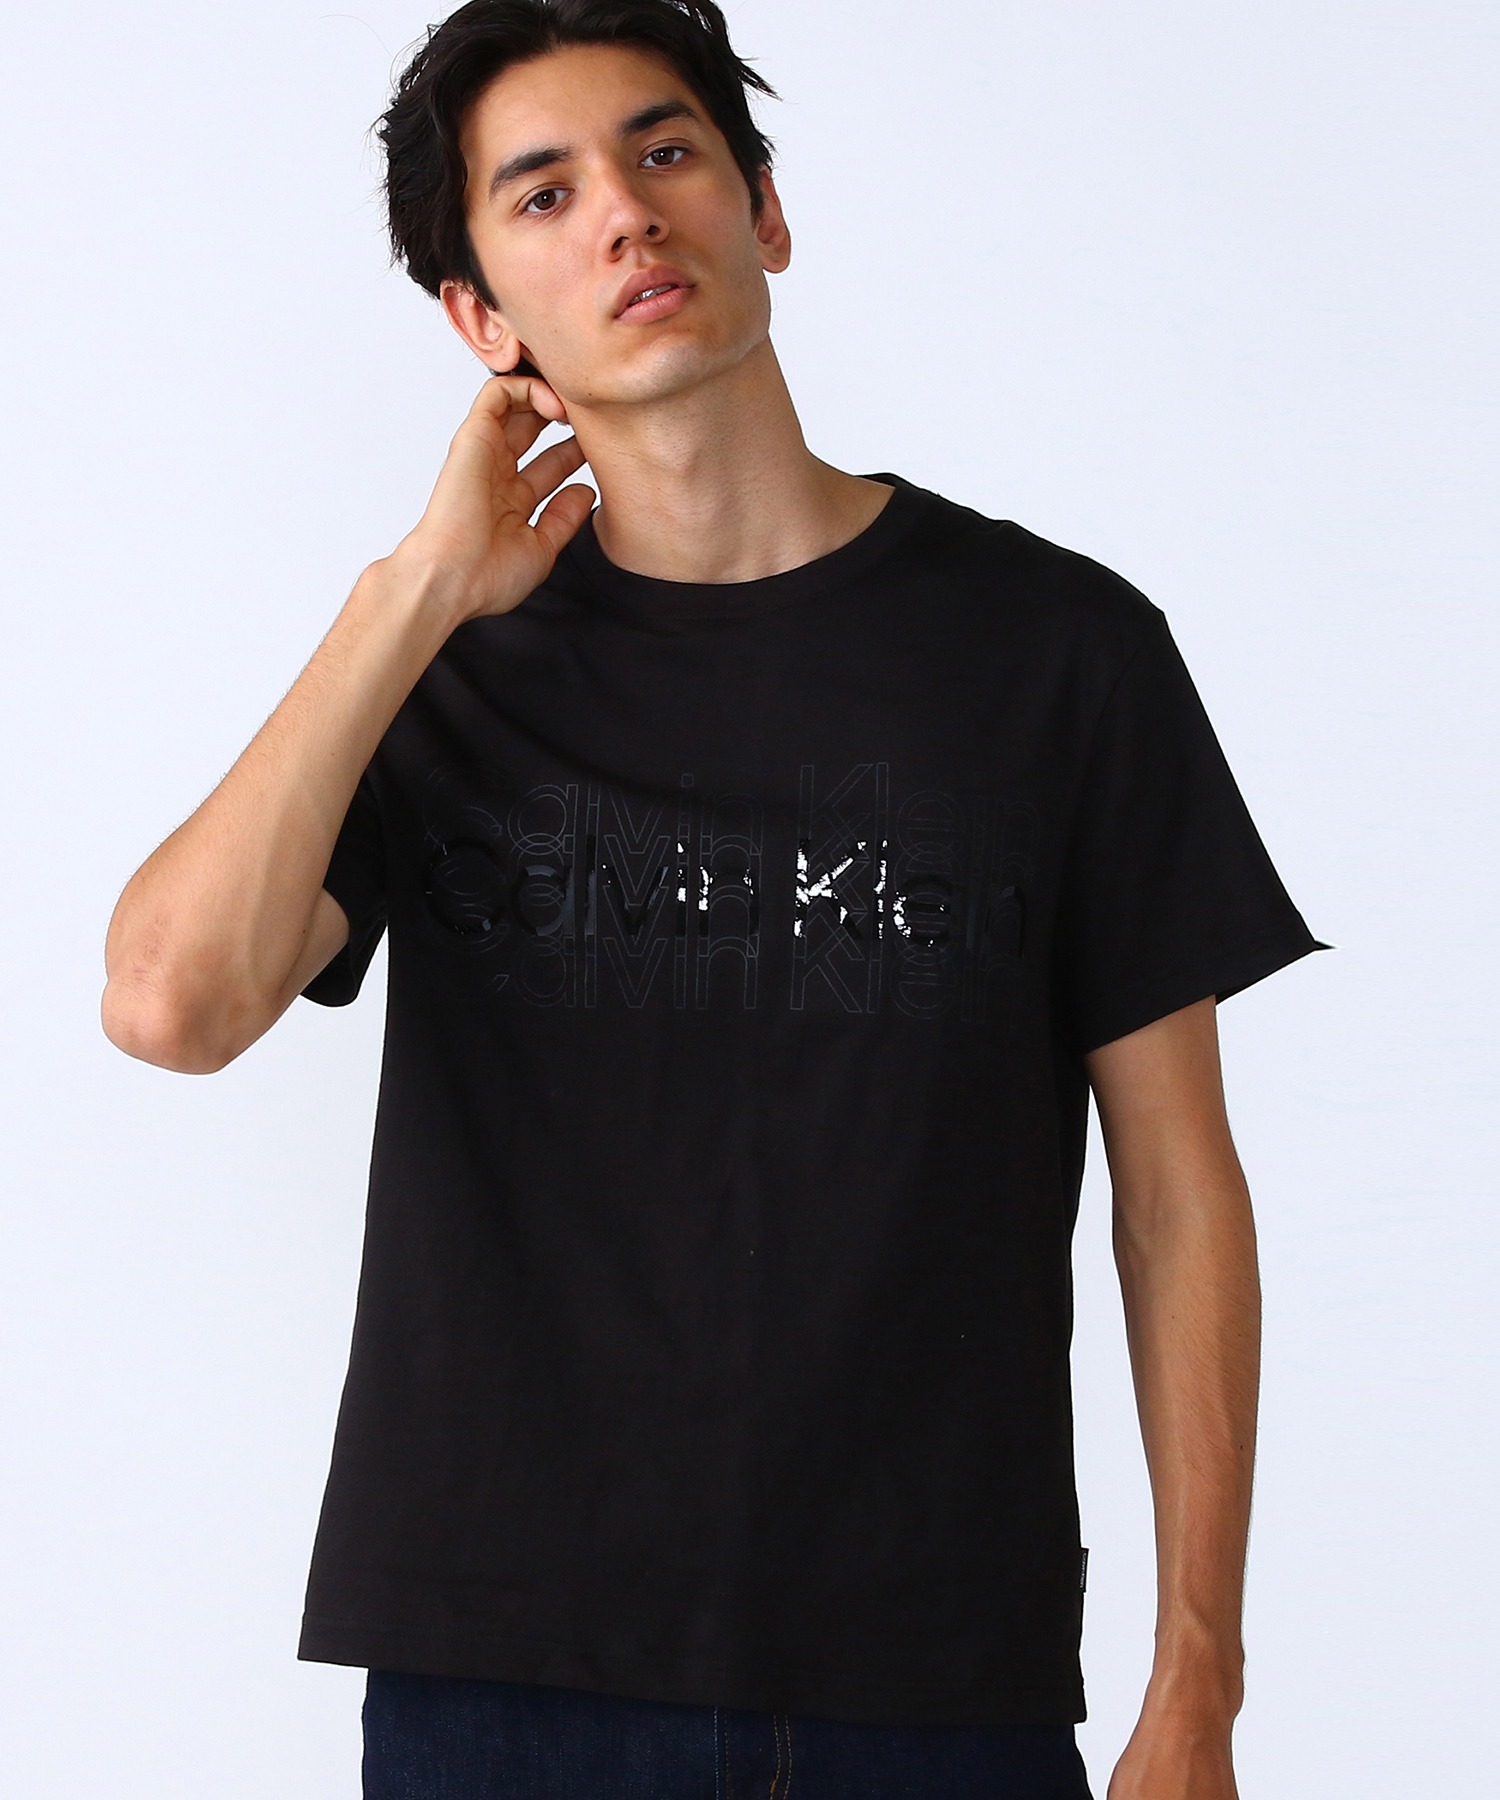 半額 日本未発売 Calvin Kleinマルチロゴ Tシャツ noblelinaje.com noblelinaje.com